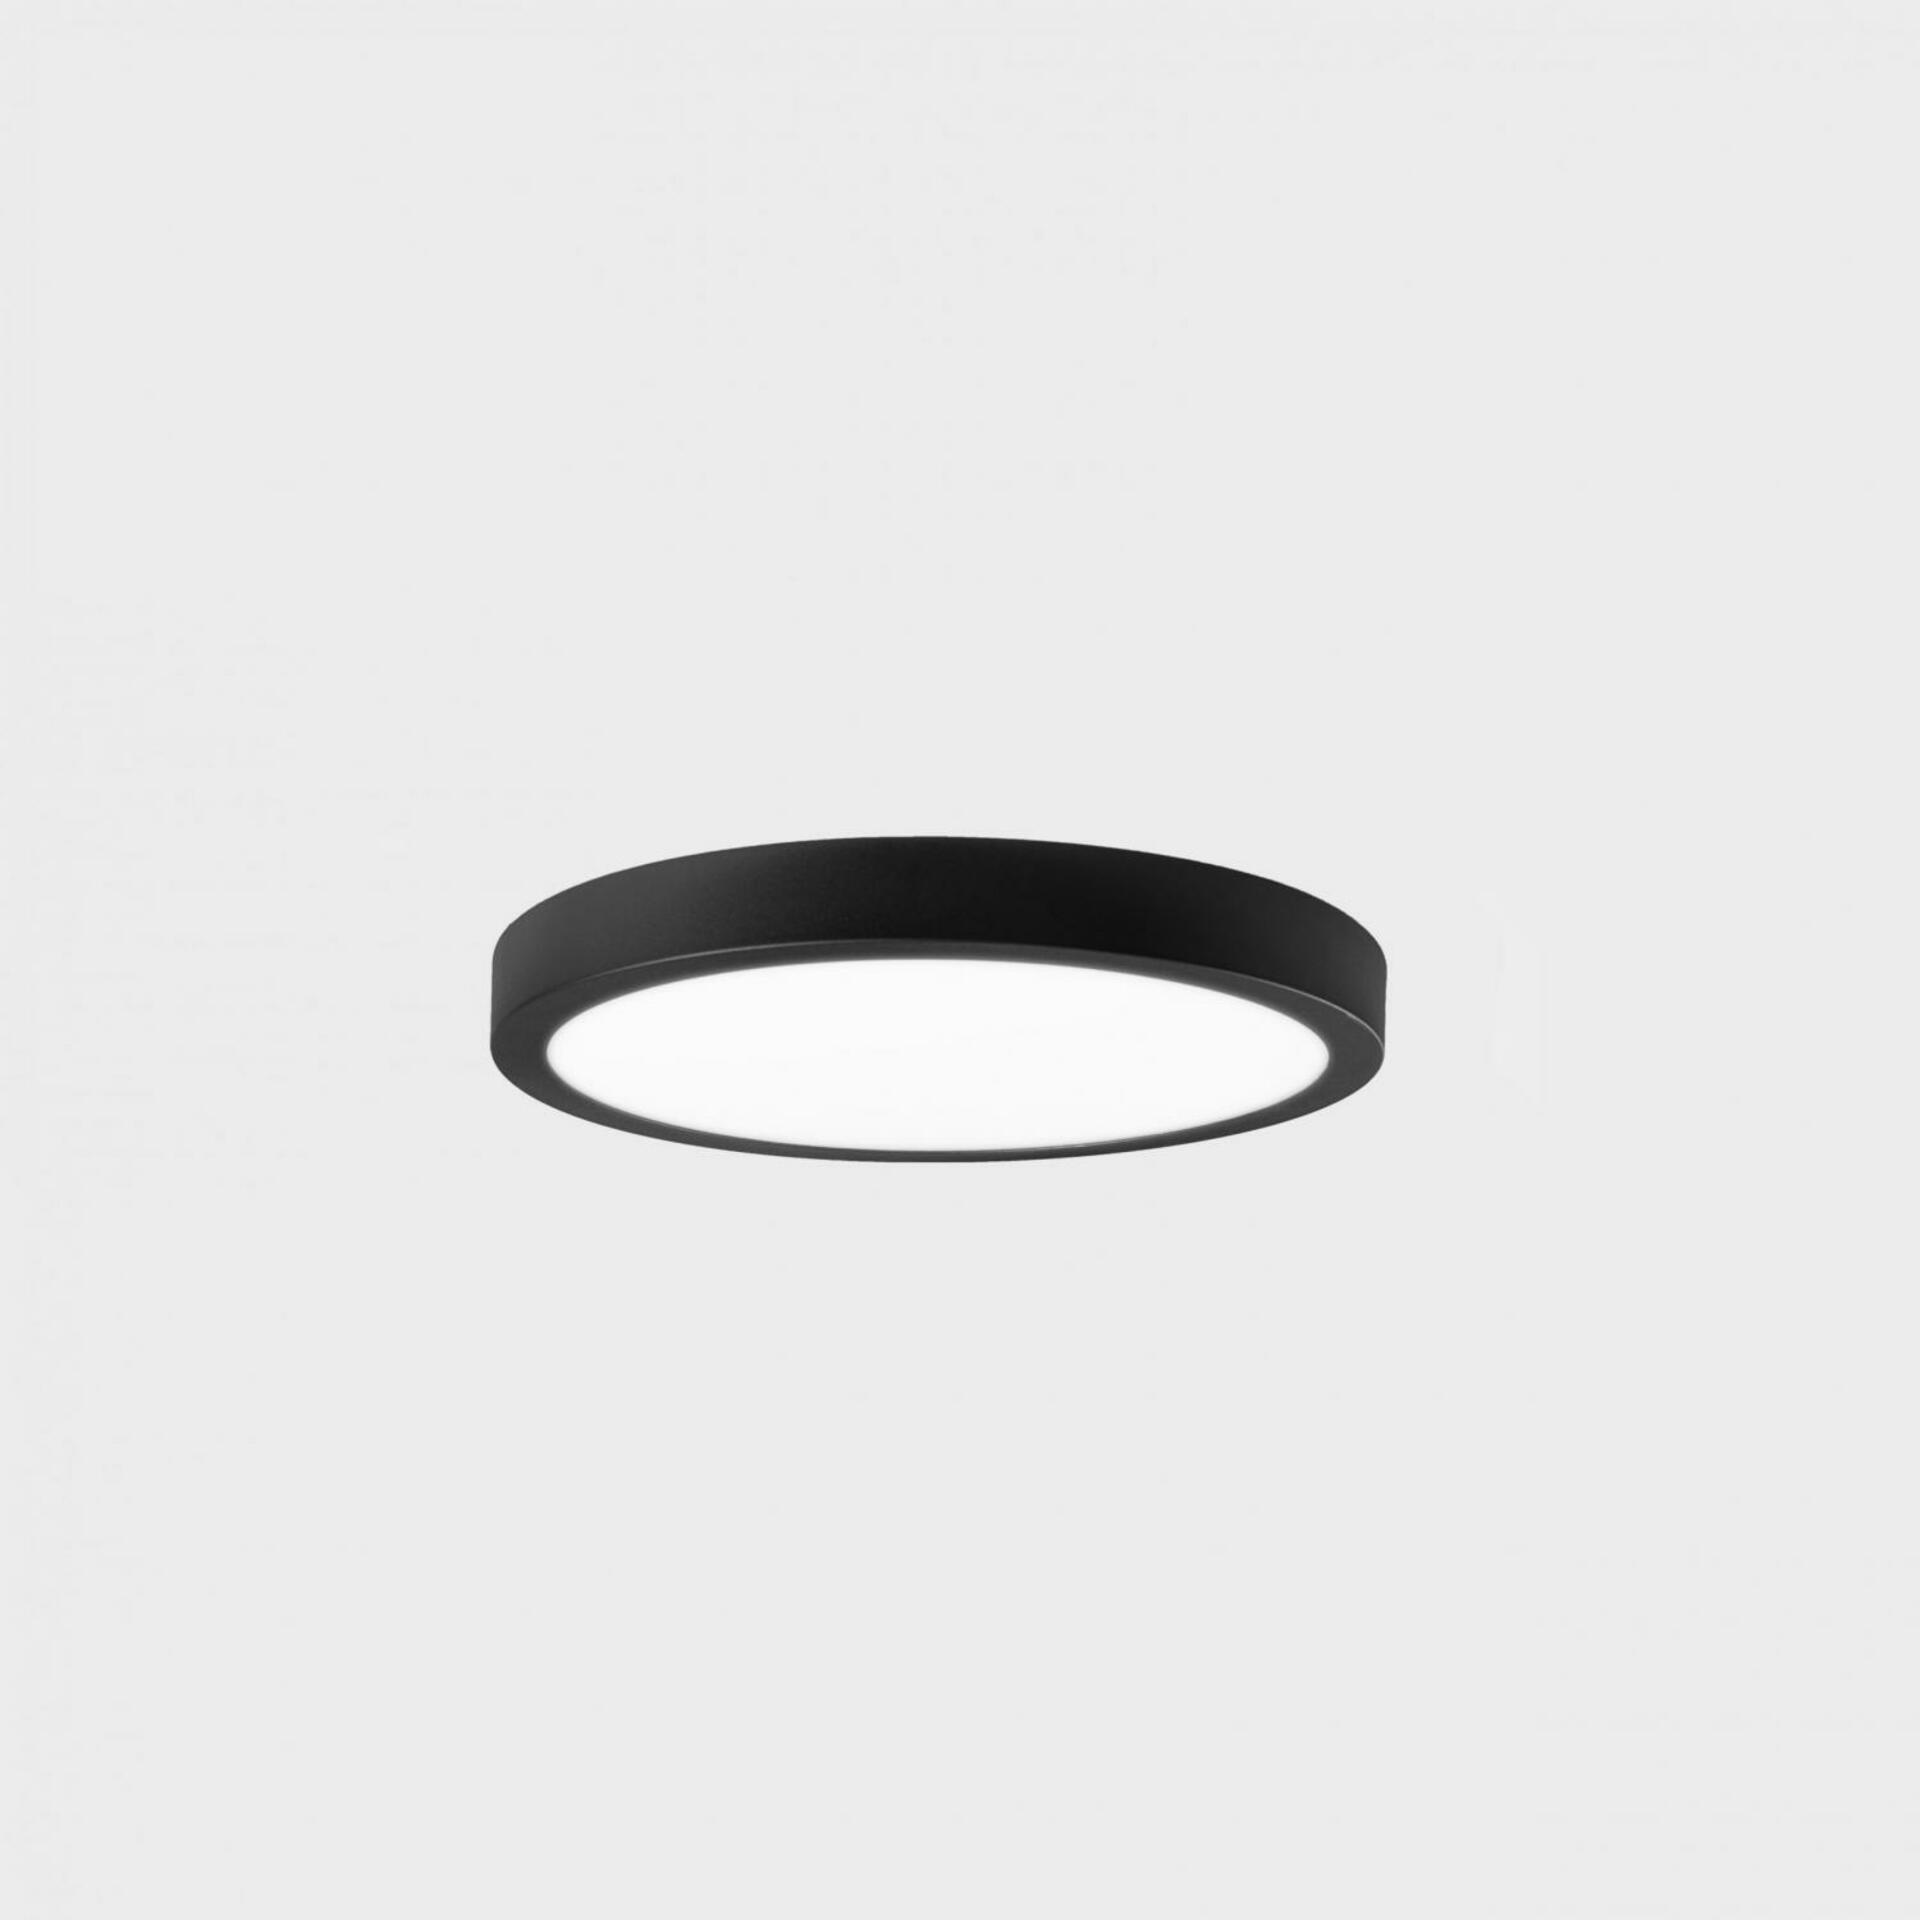 KOHL LIGHTING KOHL-Lighting DISC SLIM stropní svítidlo pr. 90 mm černá 6 W CRI 80 3000K Non-Dimm